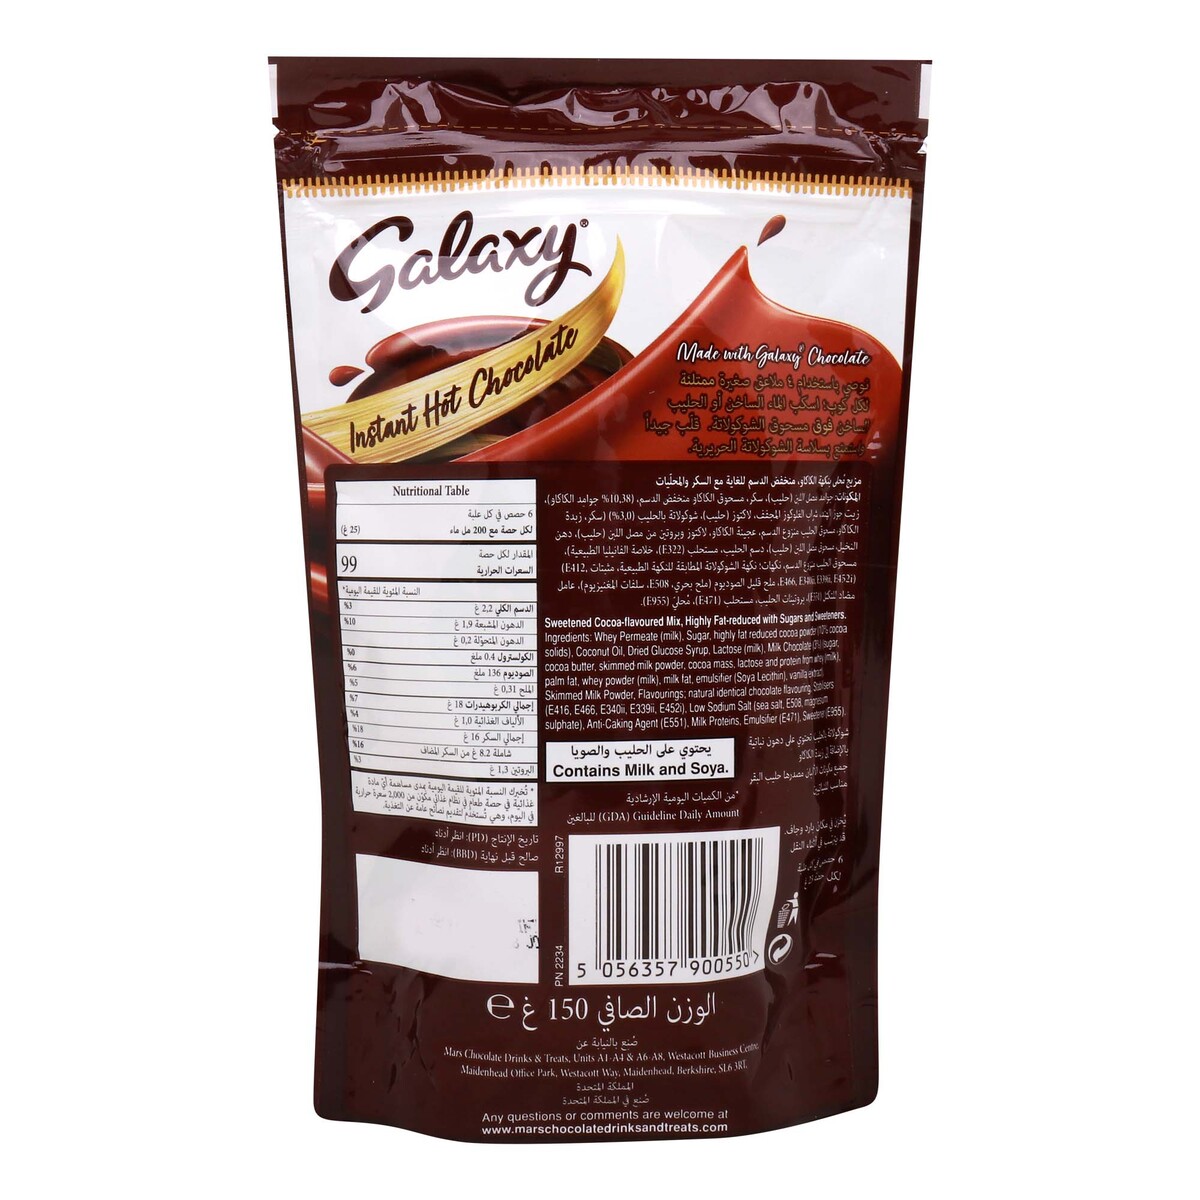 Galaxy Instant Hot Chocolate Powder 150 g